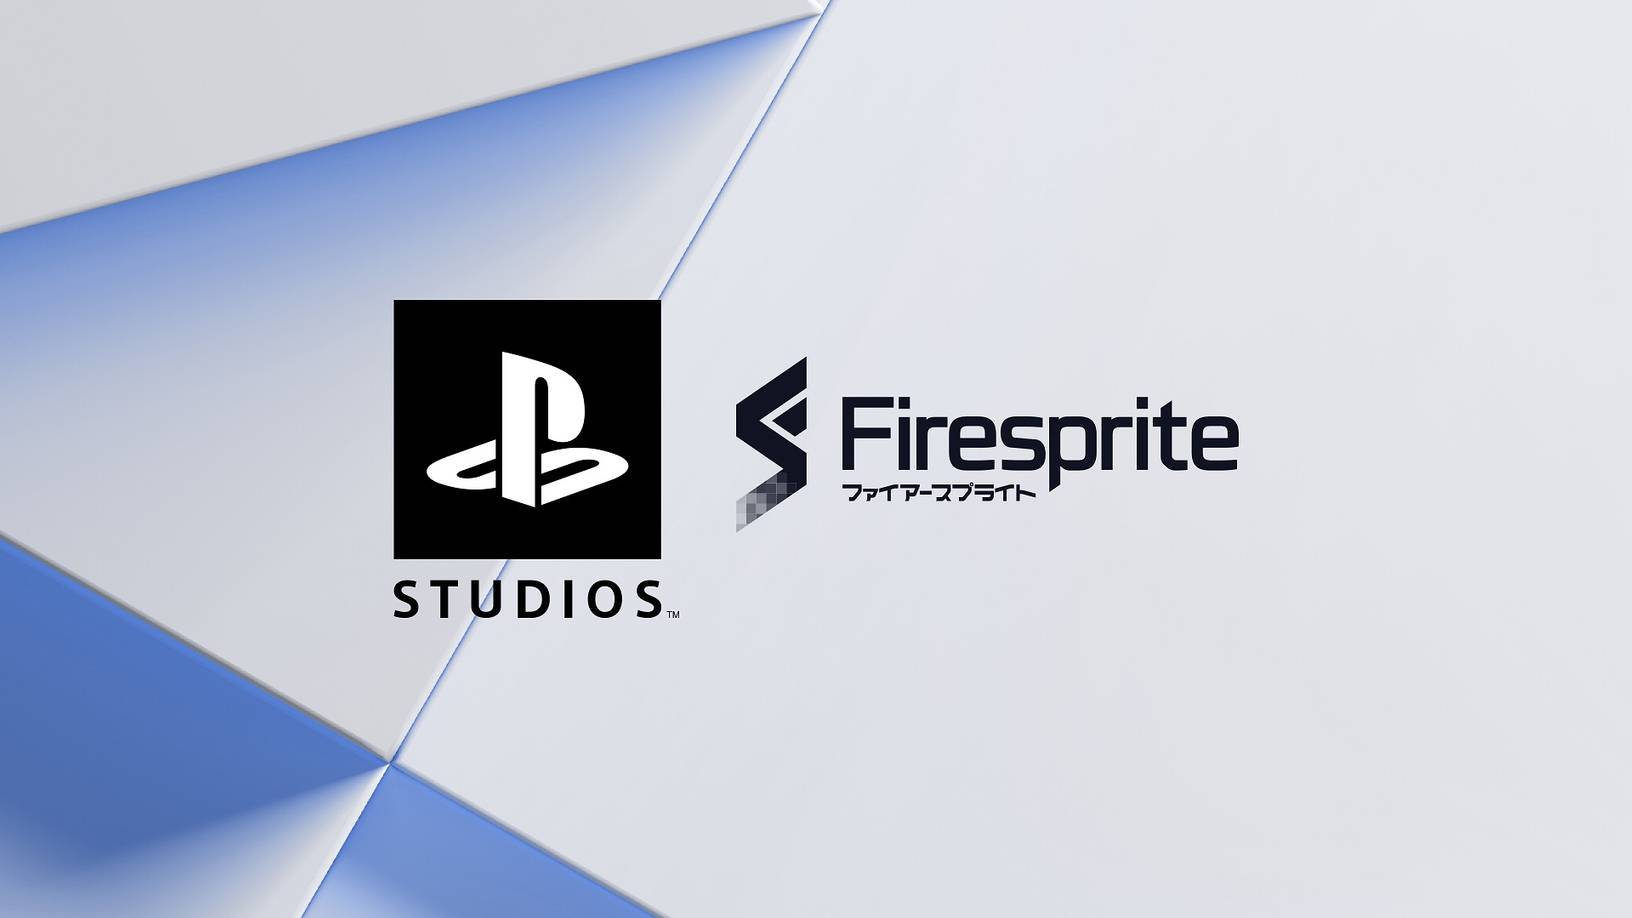 Firesprite e playstation studios anunciam parceria | c2b2ef46 firesprite | married games firesprite limited | firesprite limited | firesprite e playstation studios